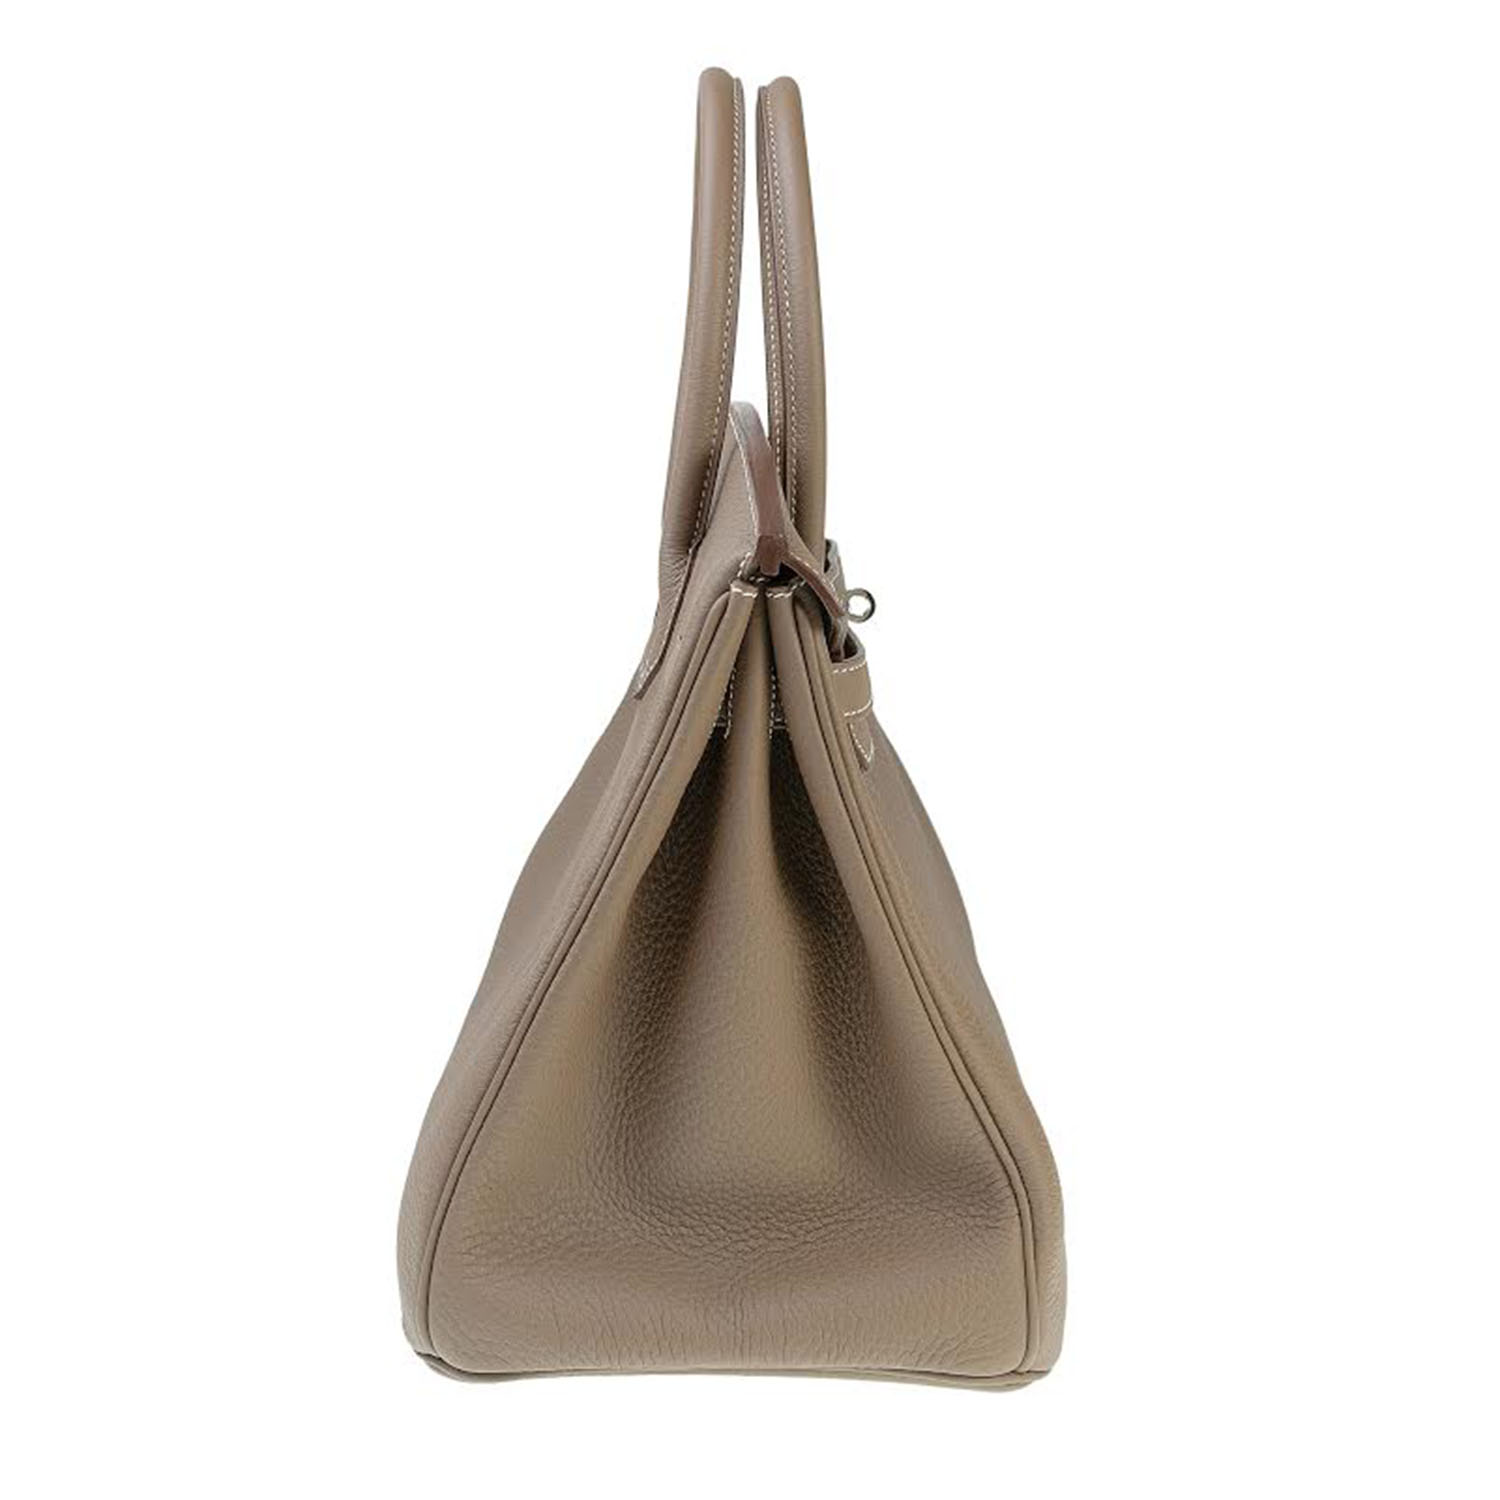 Handbag For Rent Hermes Birkin 35 Rent Fashion Bag